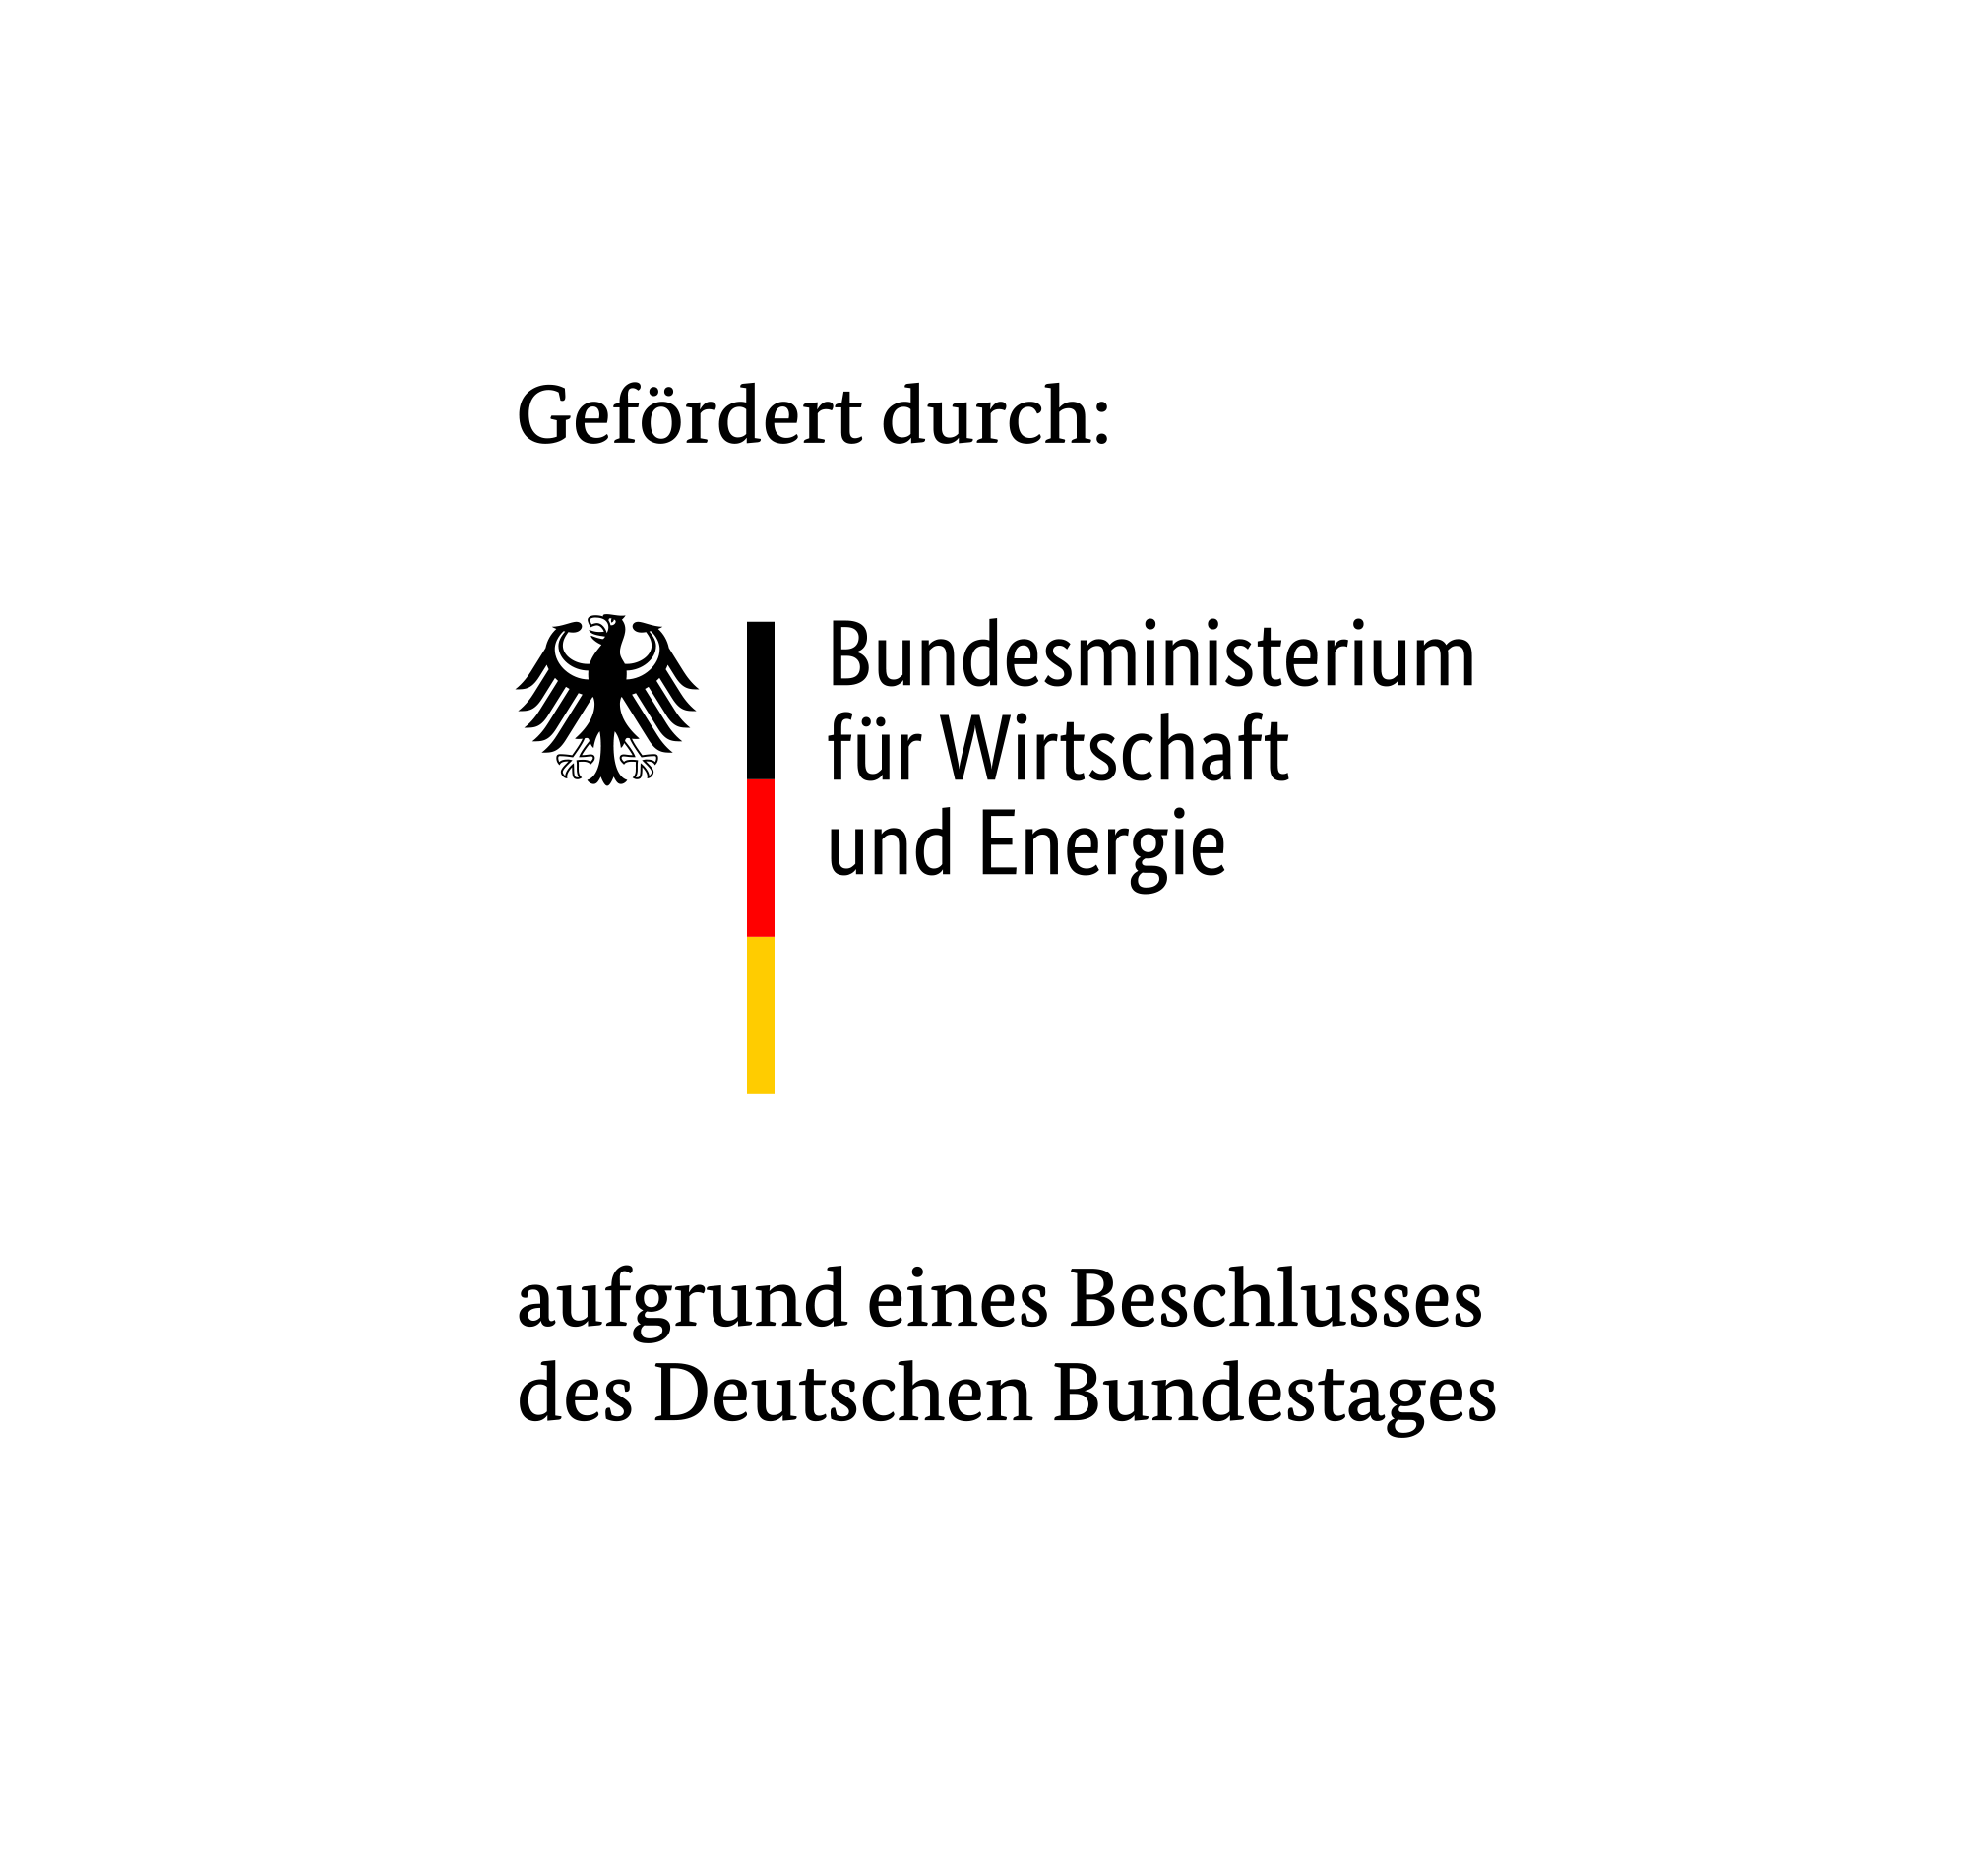 Gefördert duch das Bundesministerium für Wirtschaft und Energie aufgrund eines Beschlusses des Deutschen Bundestages